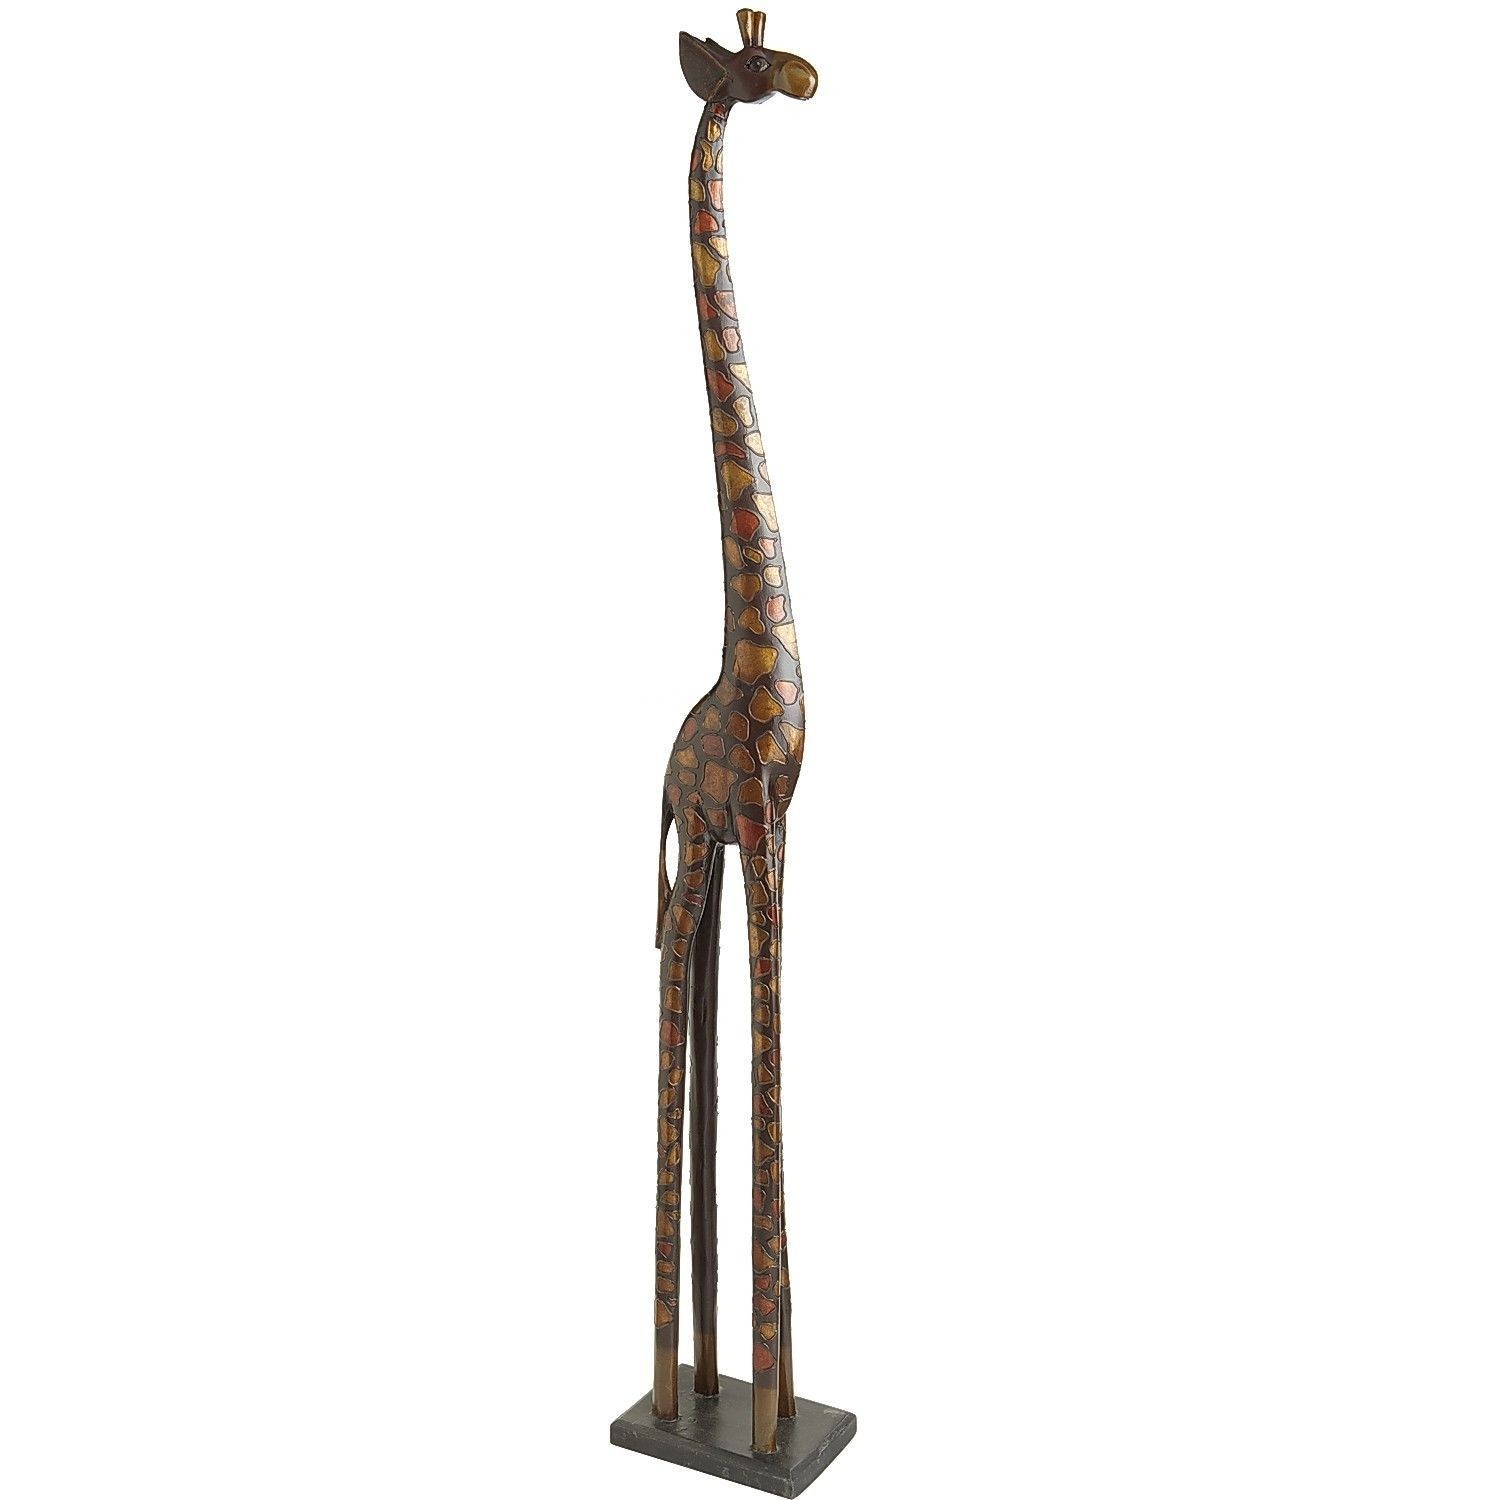 Tall wooden giraffes for sale